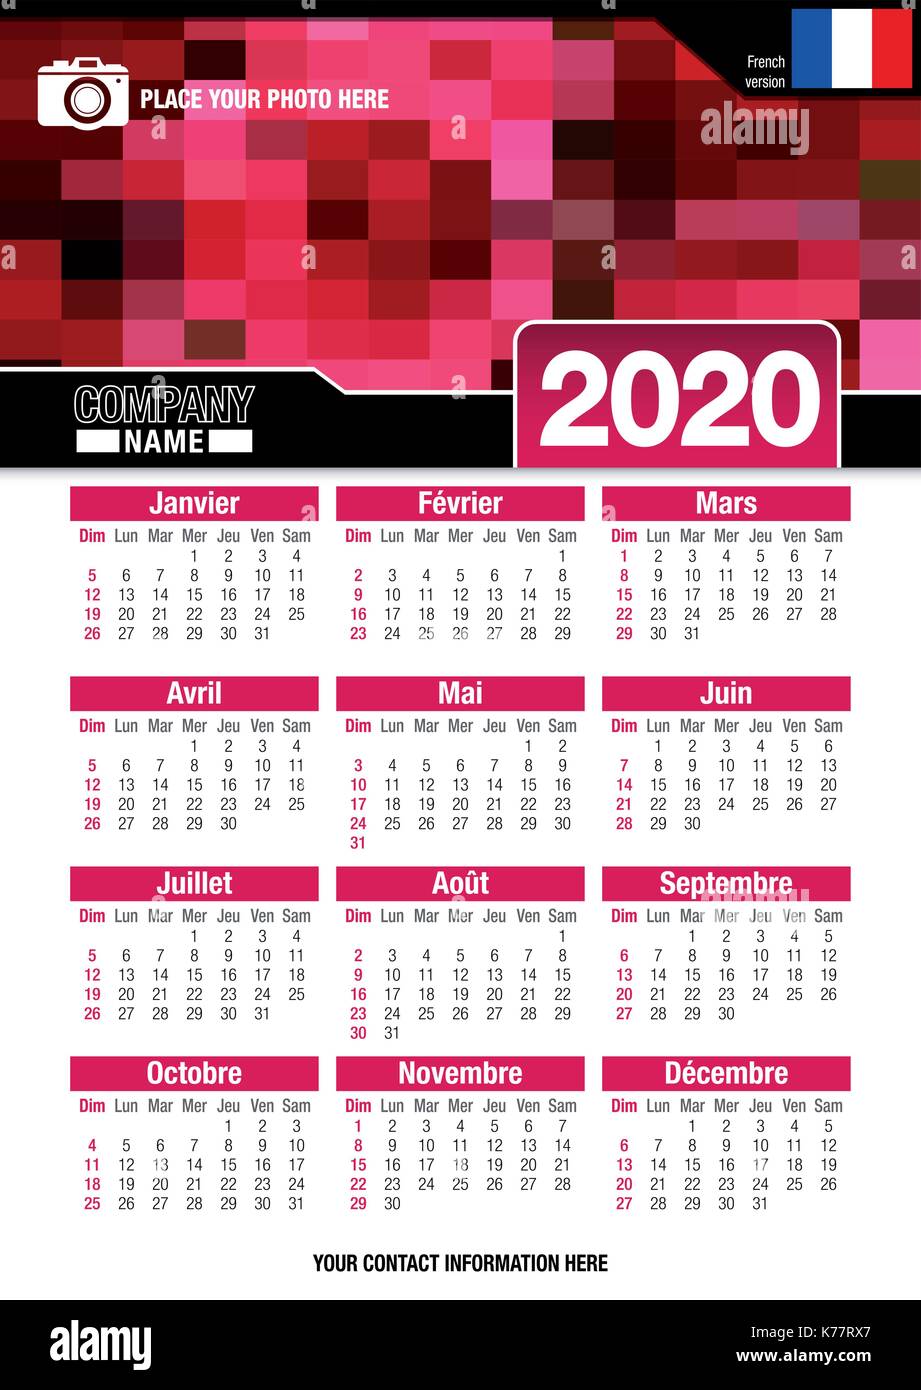 Utile calendario da parete 2020 con design di colori rosso mosaico. Formato A4 verticale. Dimensioni: 210mm x 297mm. Versione francese - immagine vettoriale Illustrazione Vettoriale